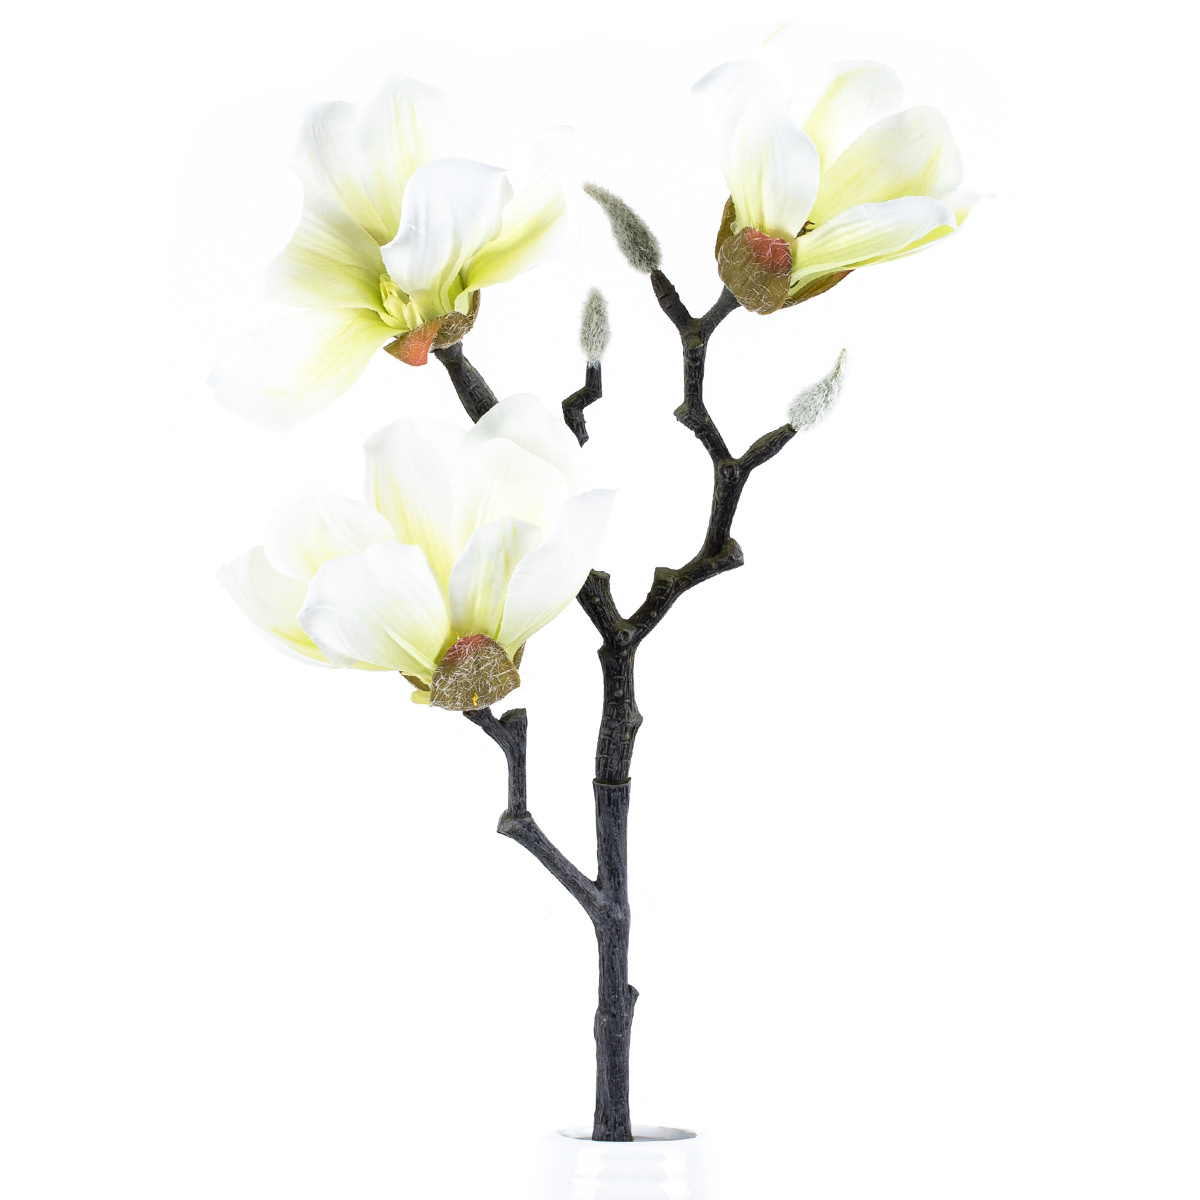 Umělá květina Magnolie bílá, 55 cm